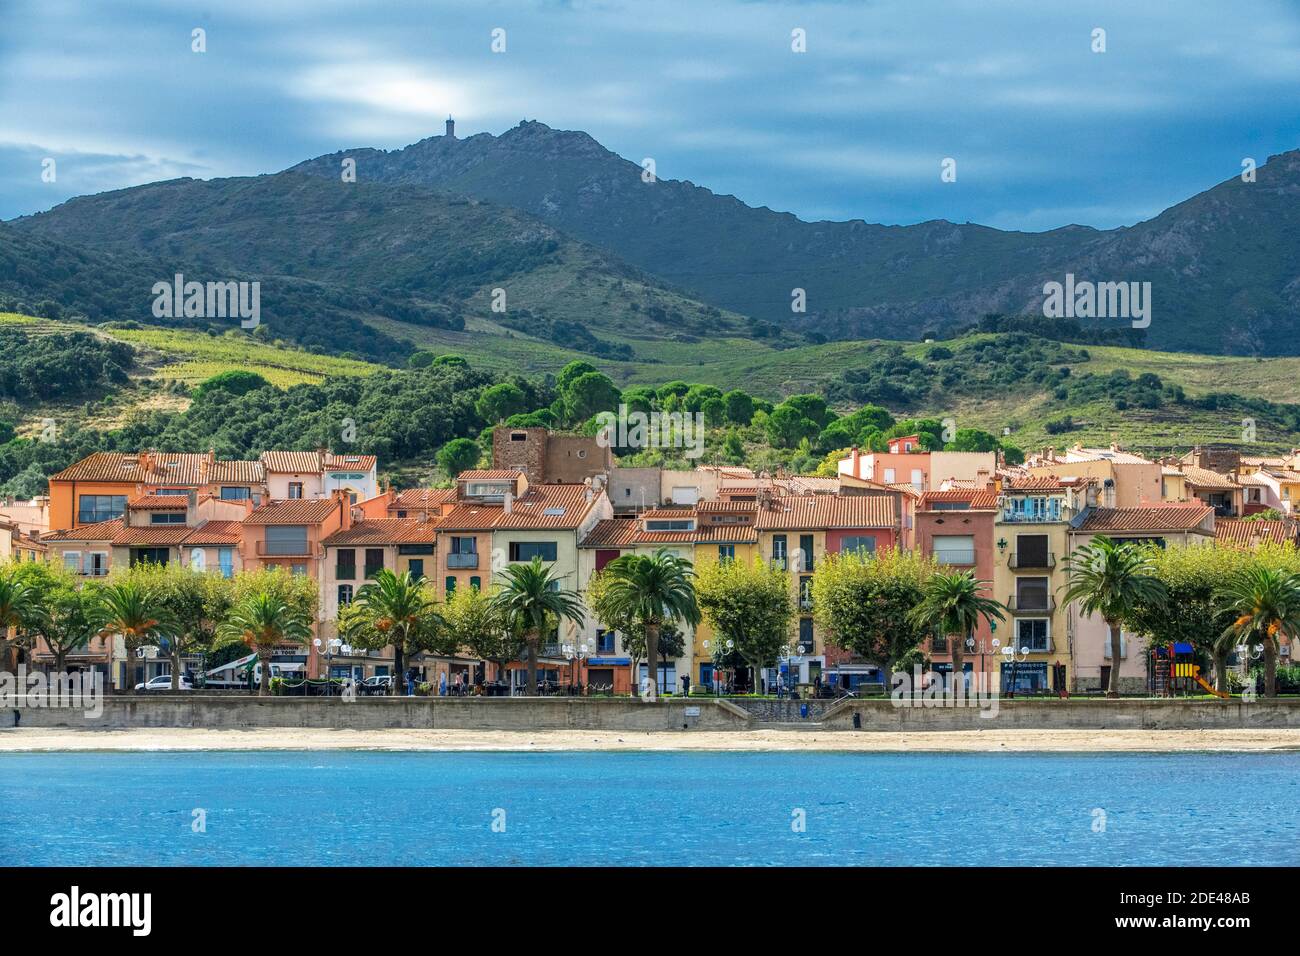 Landschaft Strand am Meer des malerischen Dorfes Collioure, in der Nähe von Perpignan im Süden von Frankreich Languedoc-Roussillon Cote Vermeille Midi Pyrenees O Stockfoto